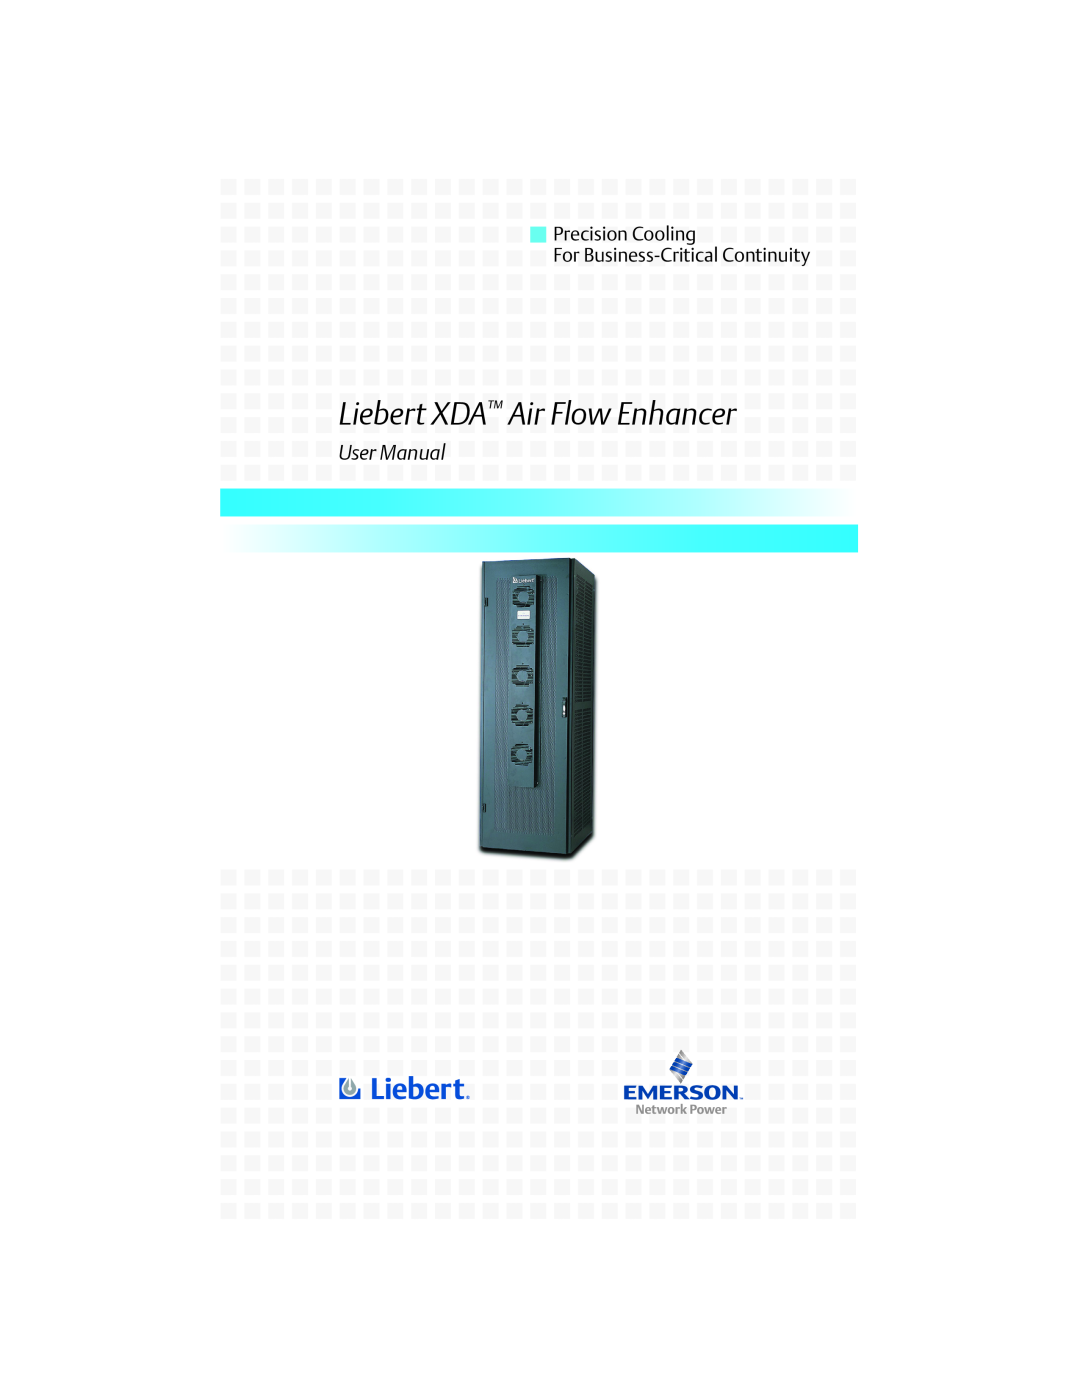 Liebert user manual Precision Cooling For Business-Critical Continuity, Liebert XDA Air Flow Enhancer 